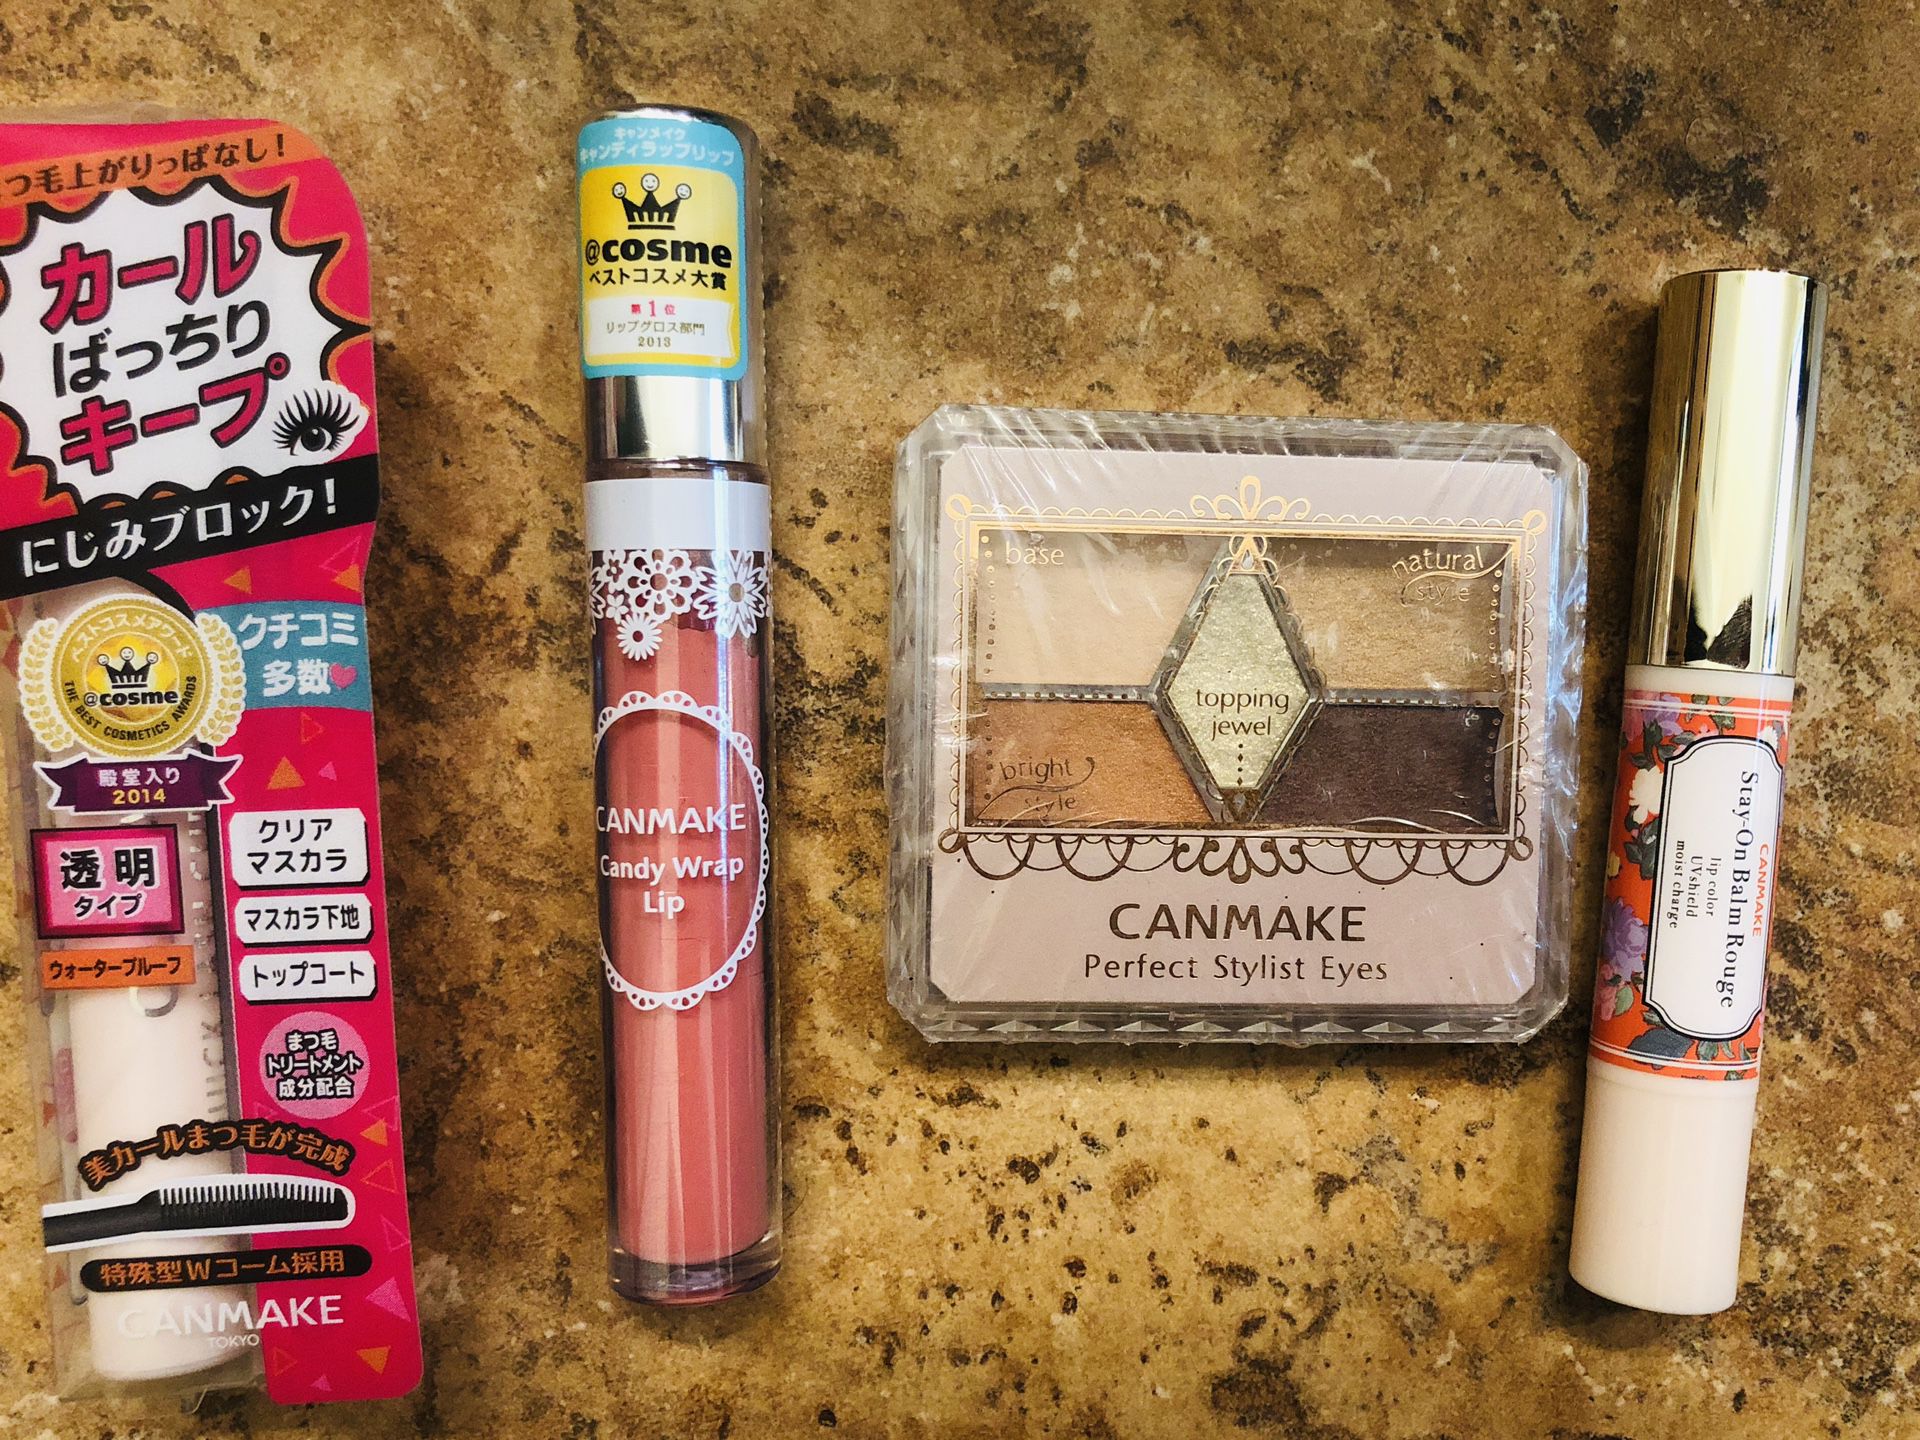 Japanese Canmake makeup set